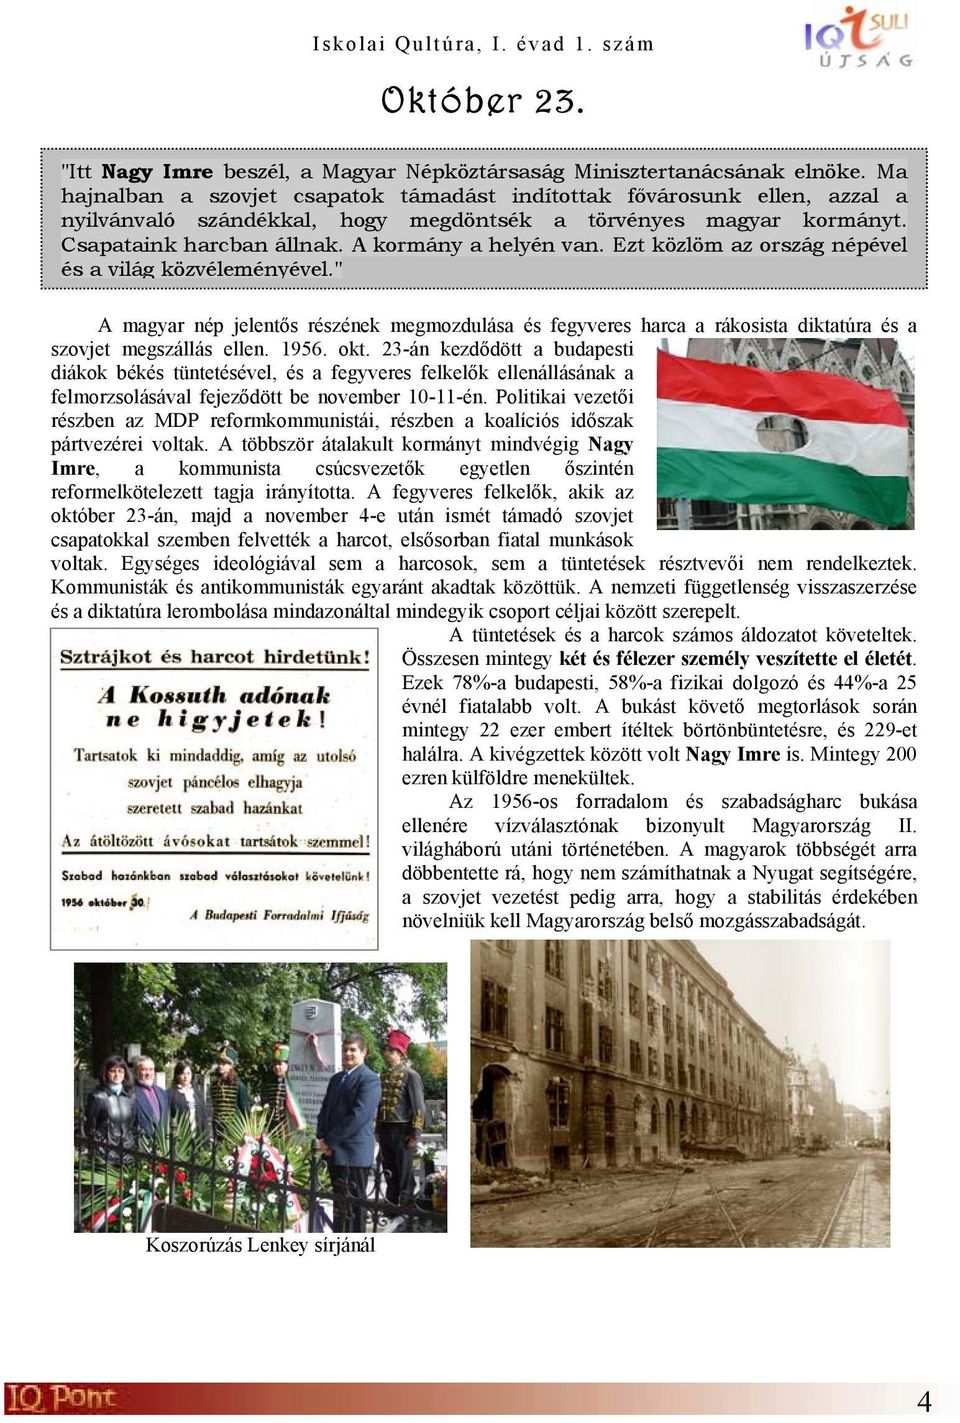 Ezt közlöm az ország népével és a világ közvéleményével." A magyar nép jelentős részének megmozdulása és fegyveres harca a rákosista diktatúra és a szovjet megszállás ellen. 1956. okt.